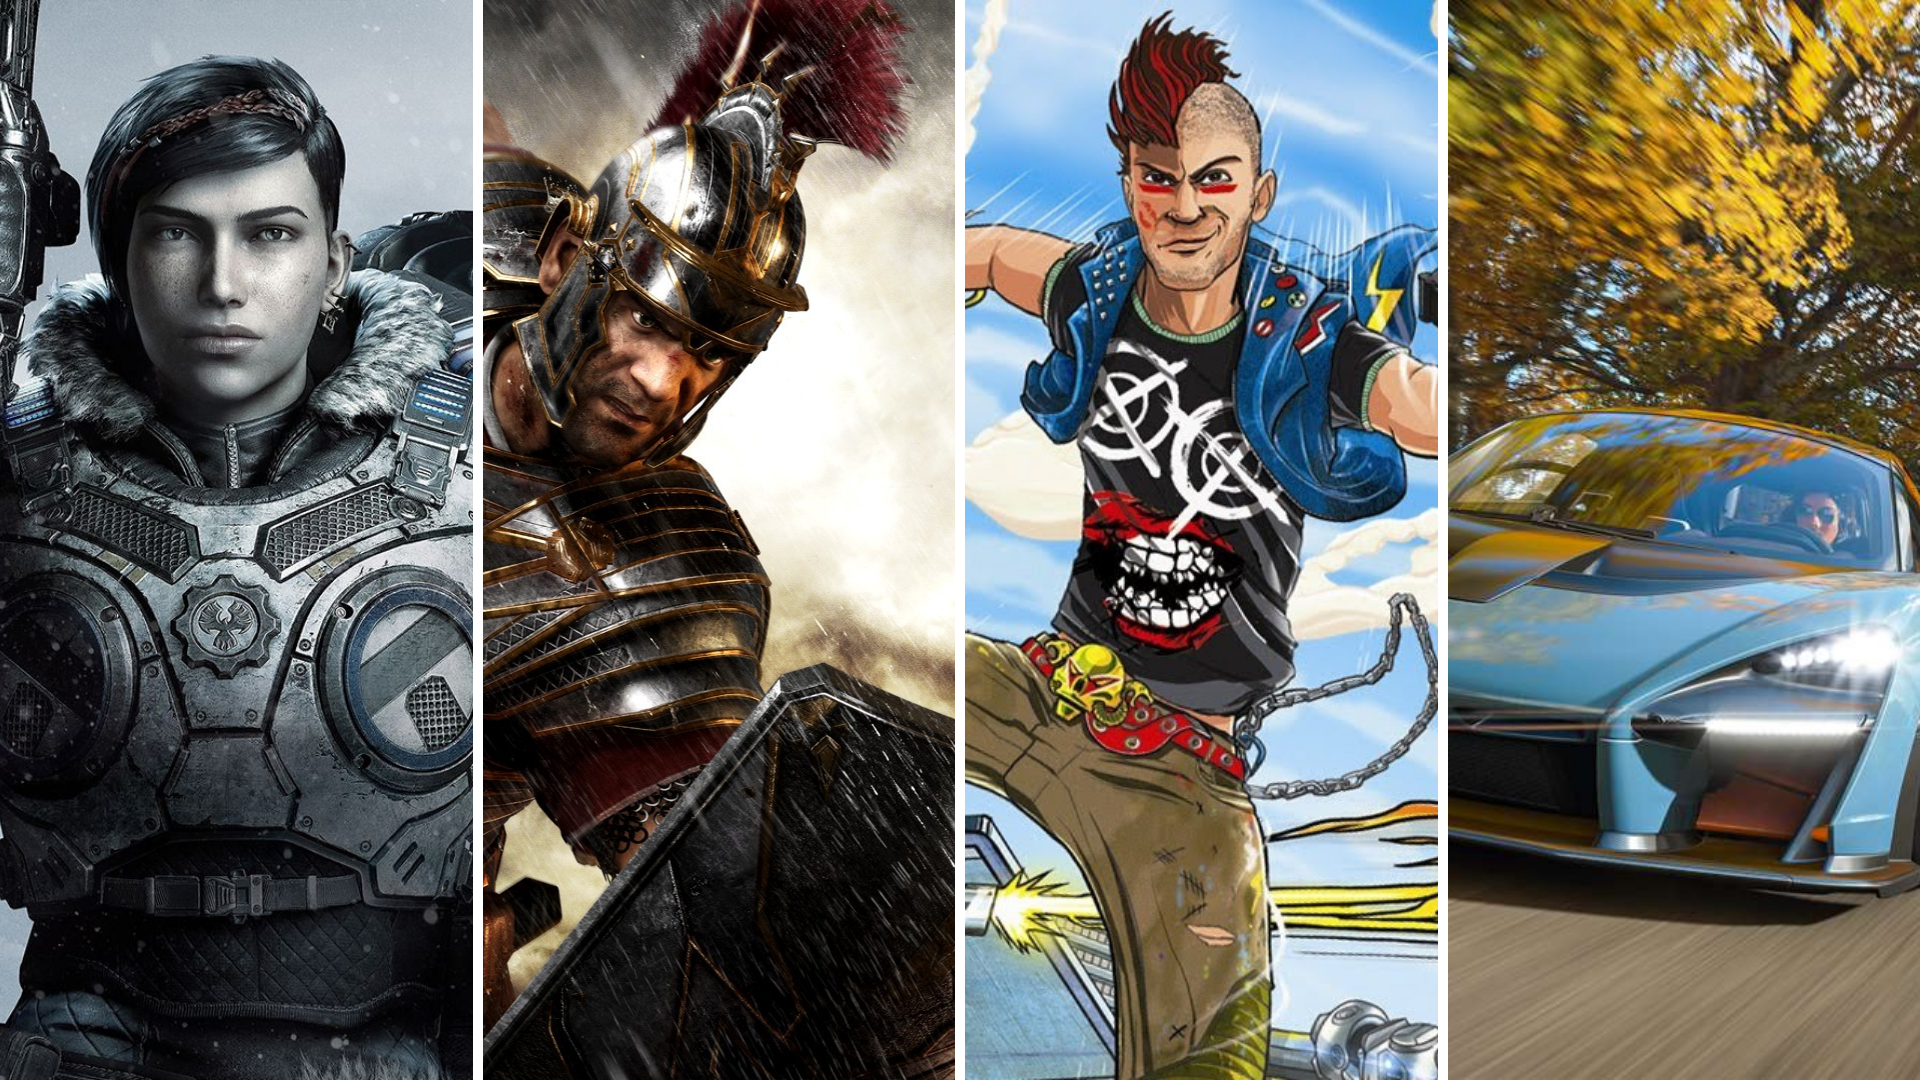 Os melhores jogos exclusivos lançados para o Xbox One - Canaltech